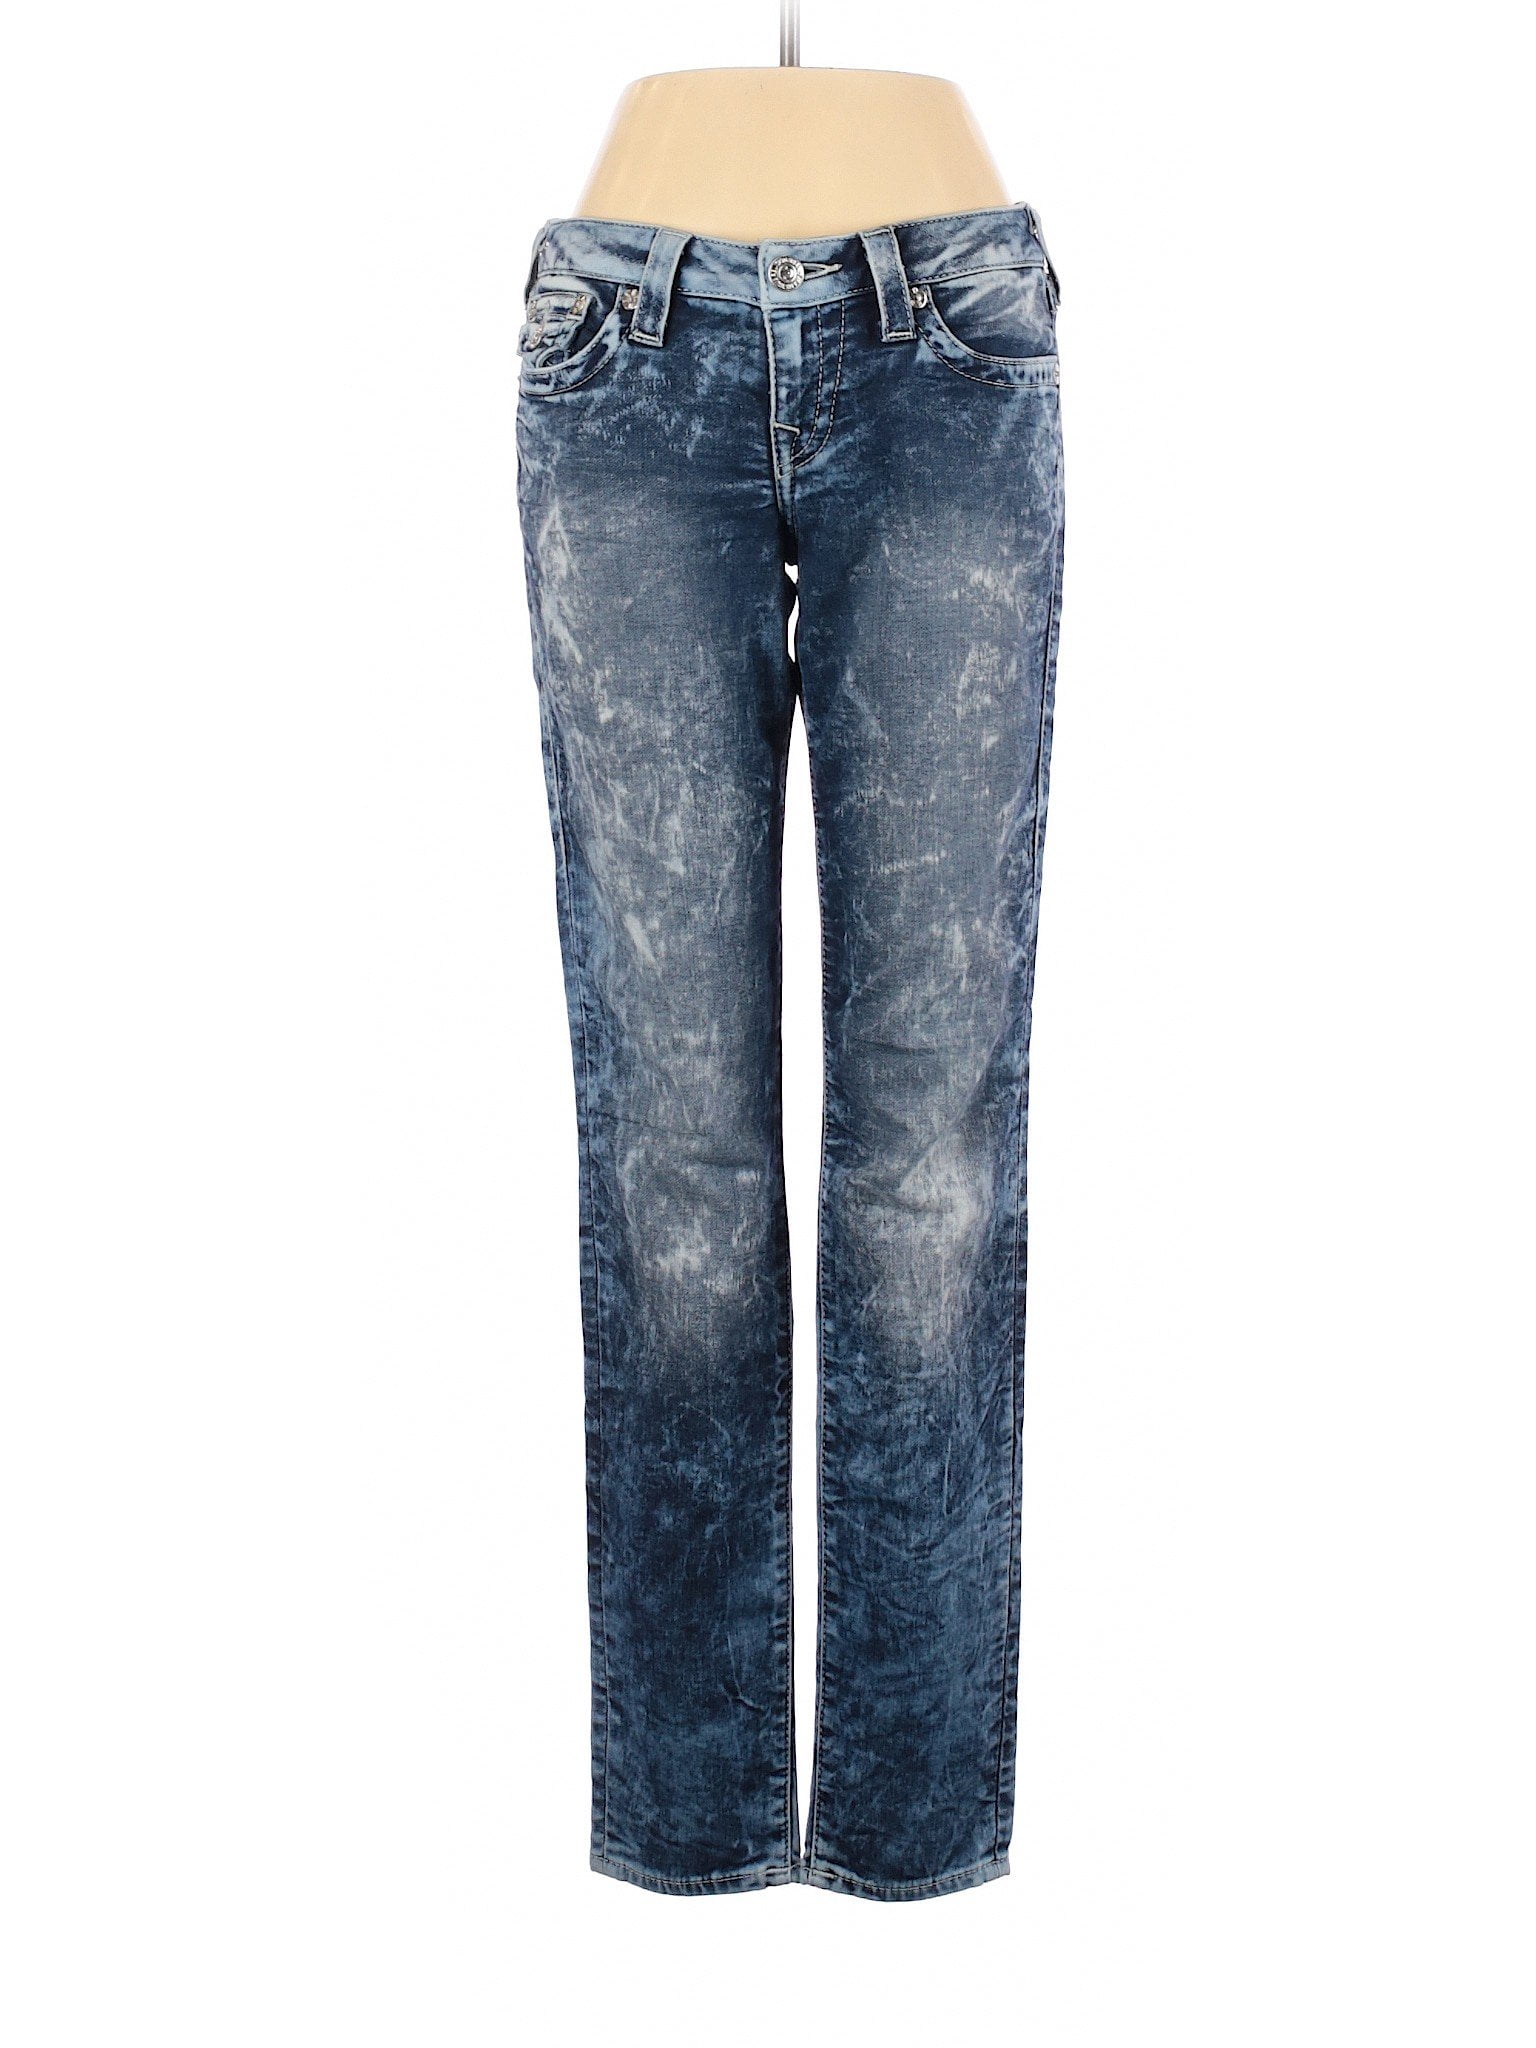 true religion jeans walmart